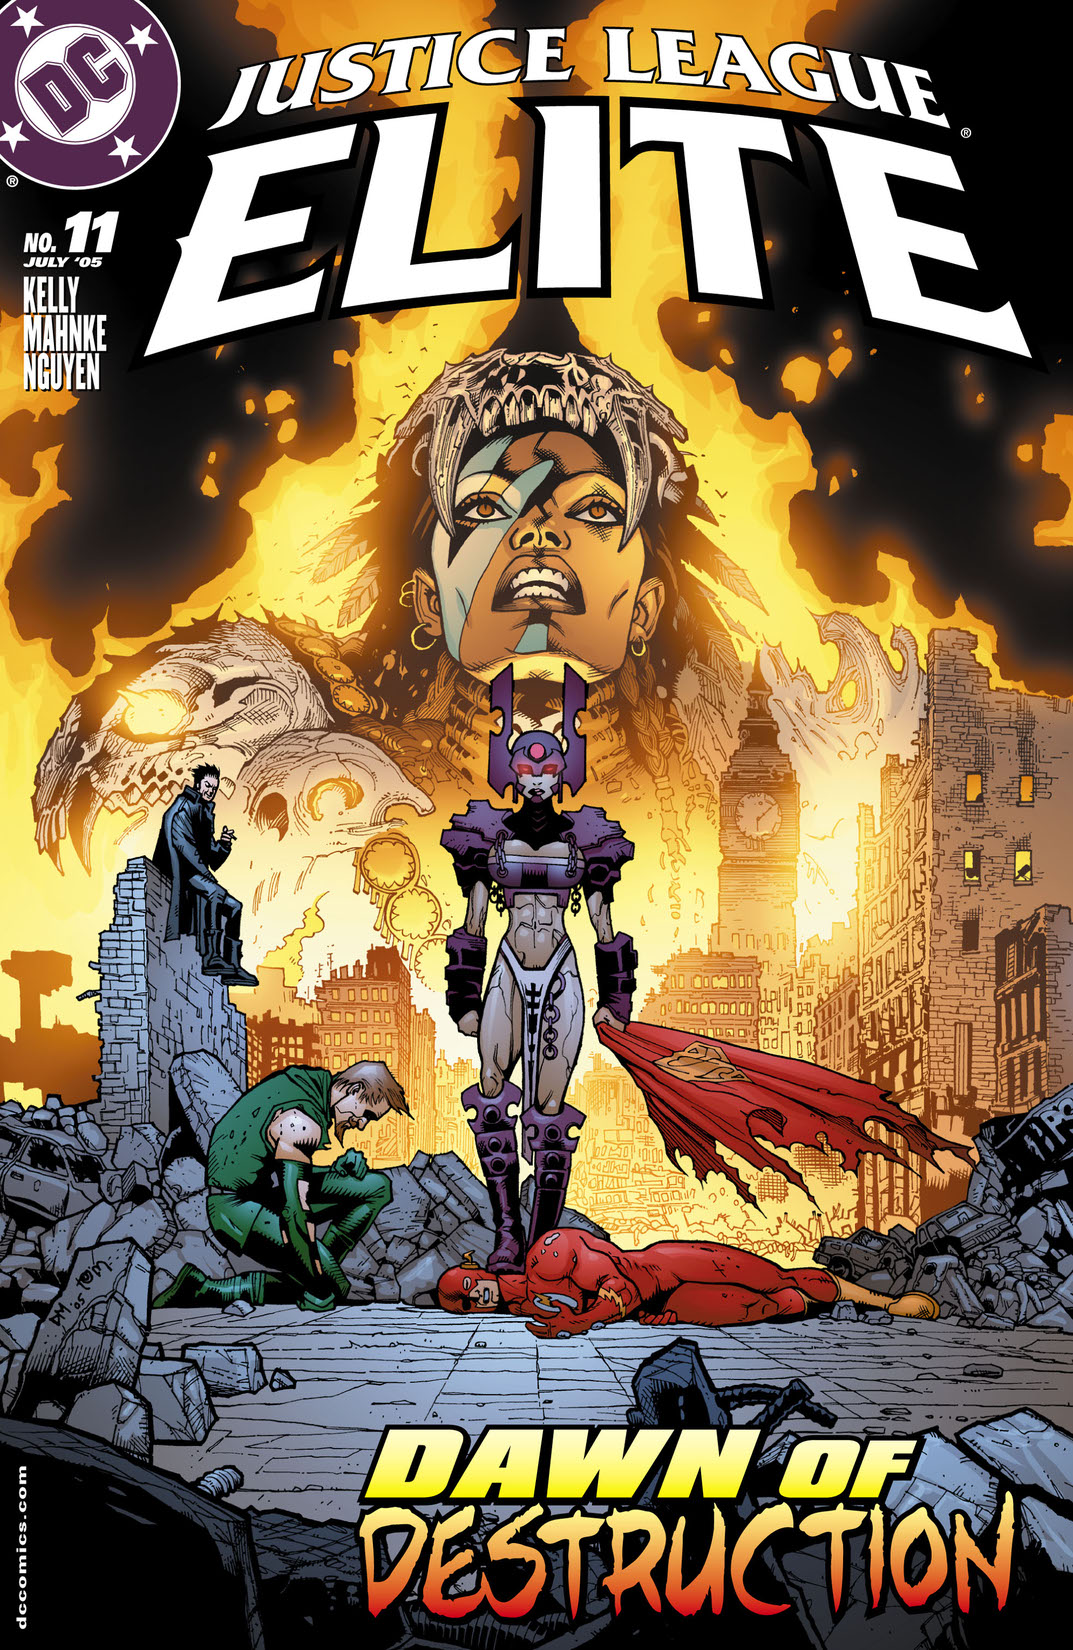 Justice League: Elite #11 preview images